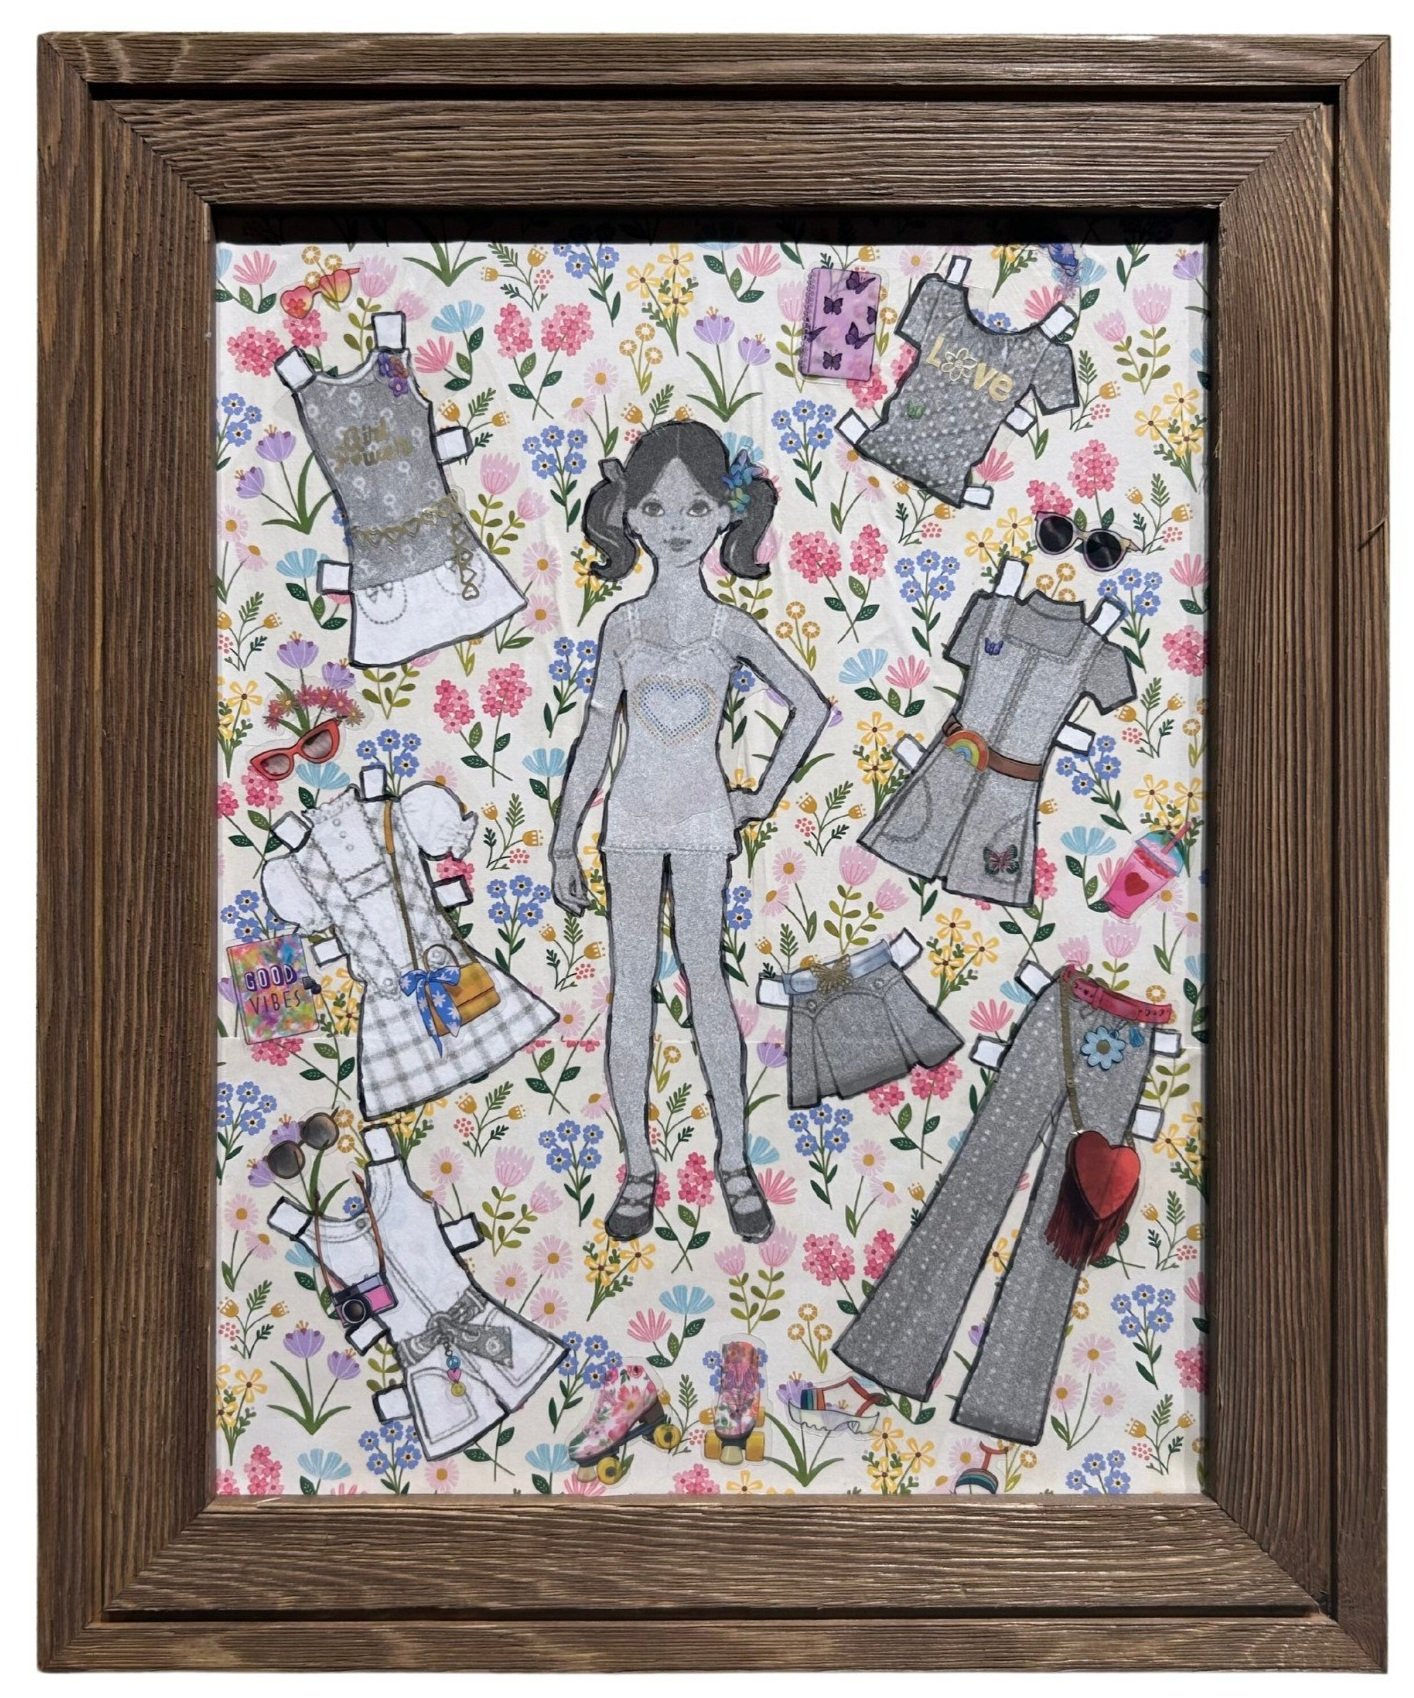 Cheryl Hazelton, "Paper Dolls "